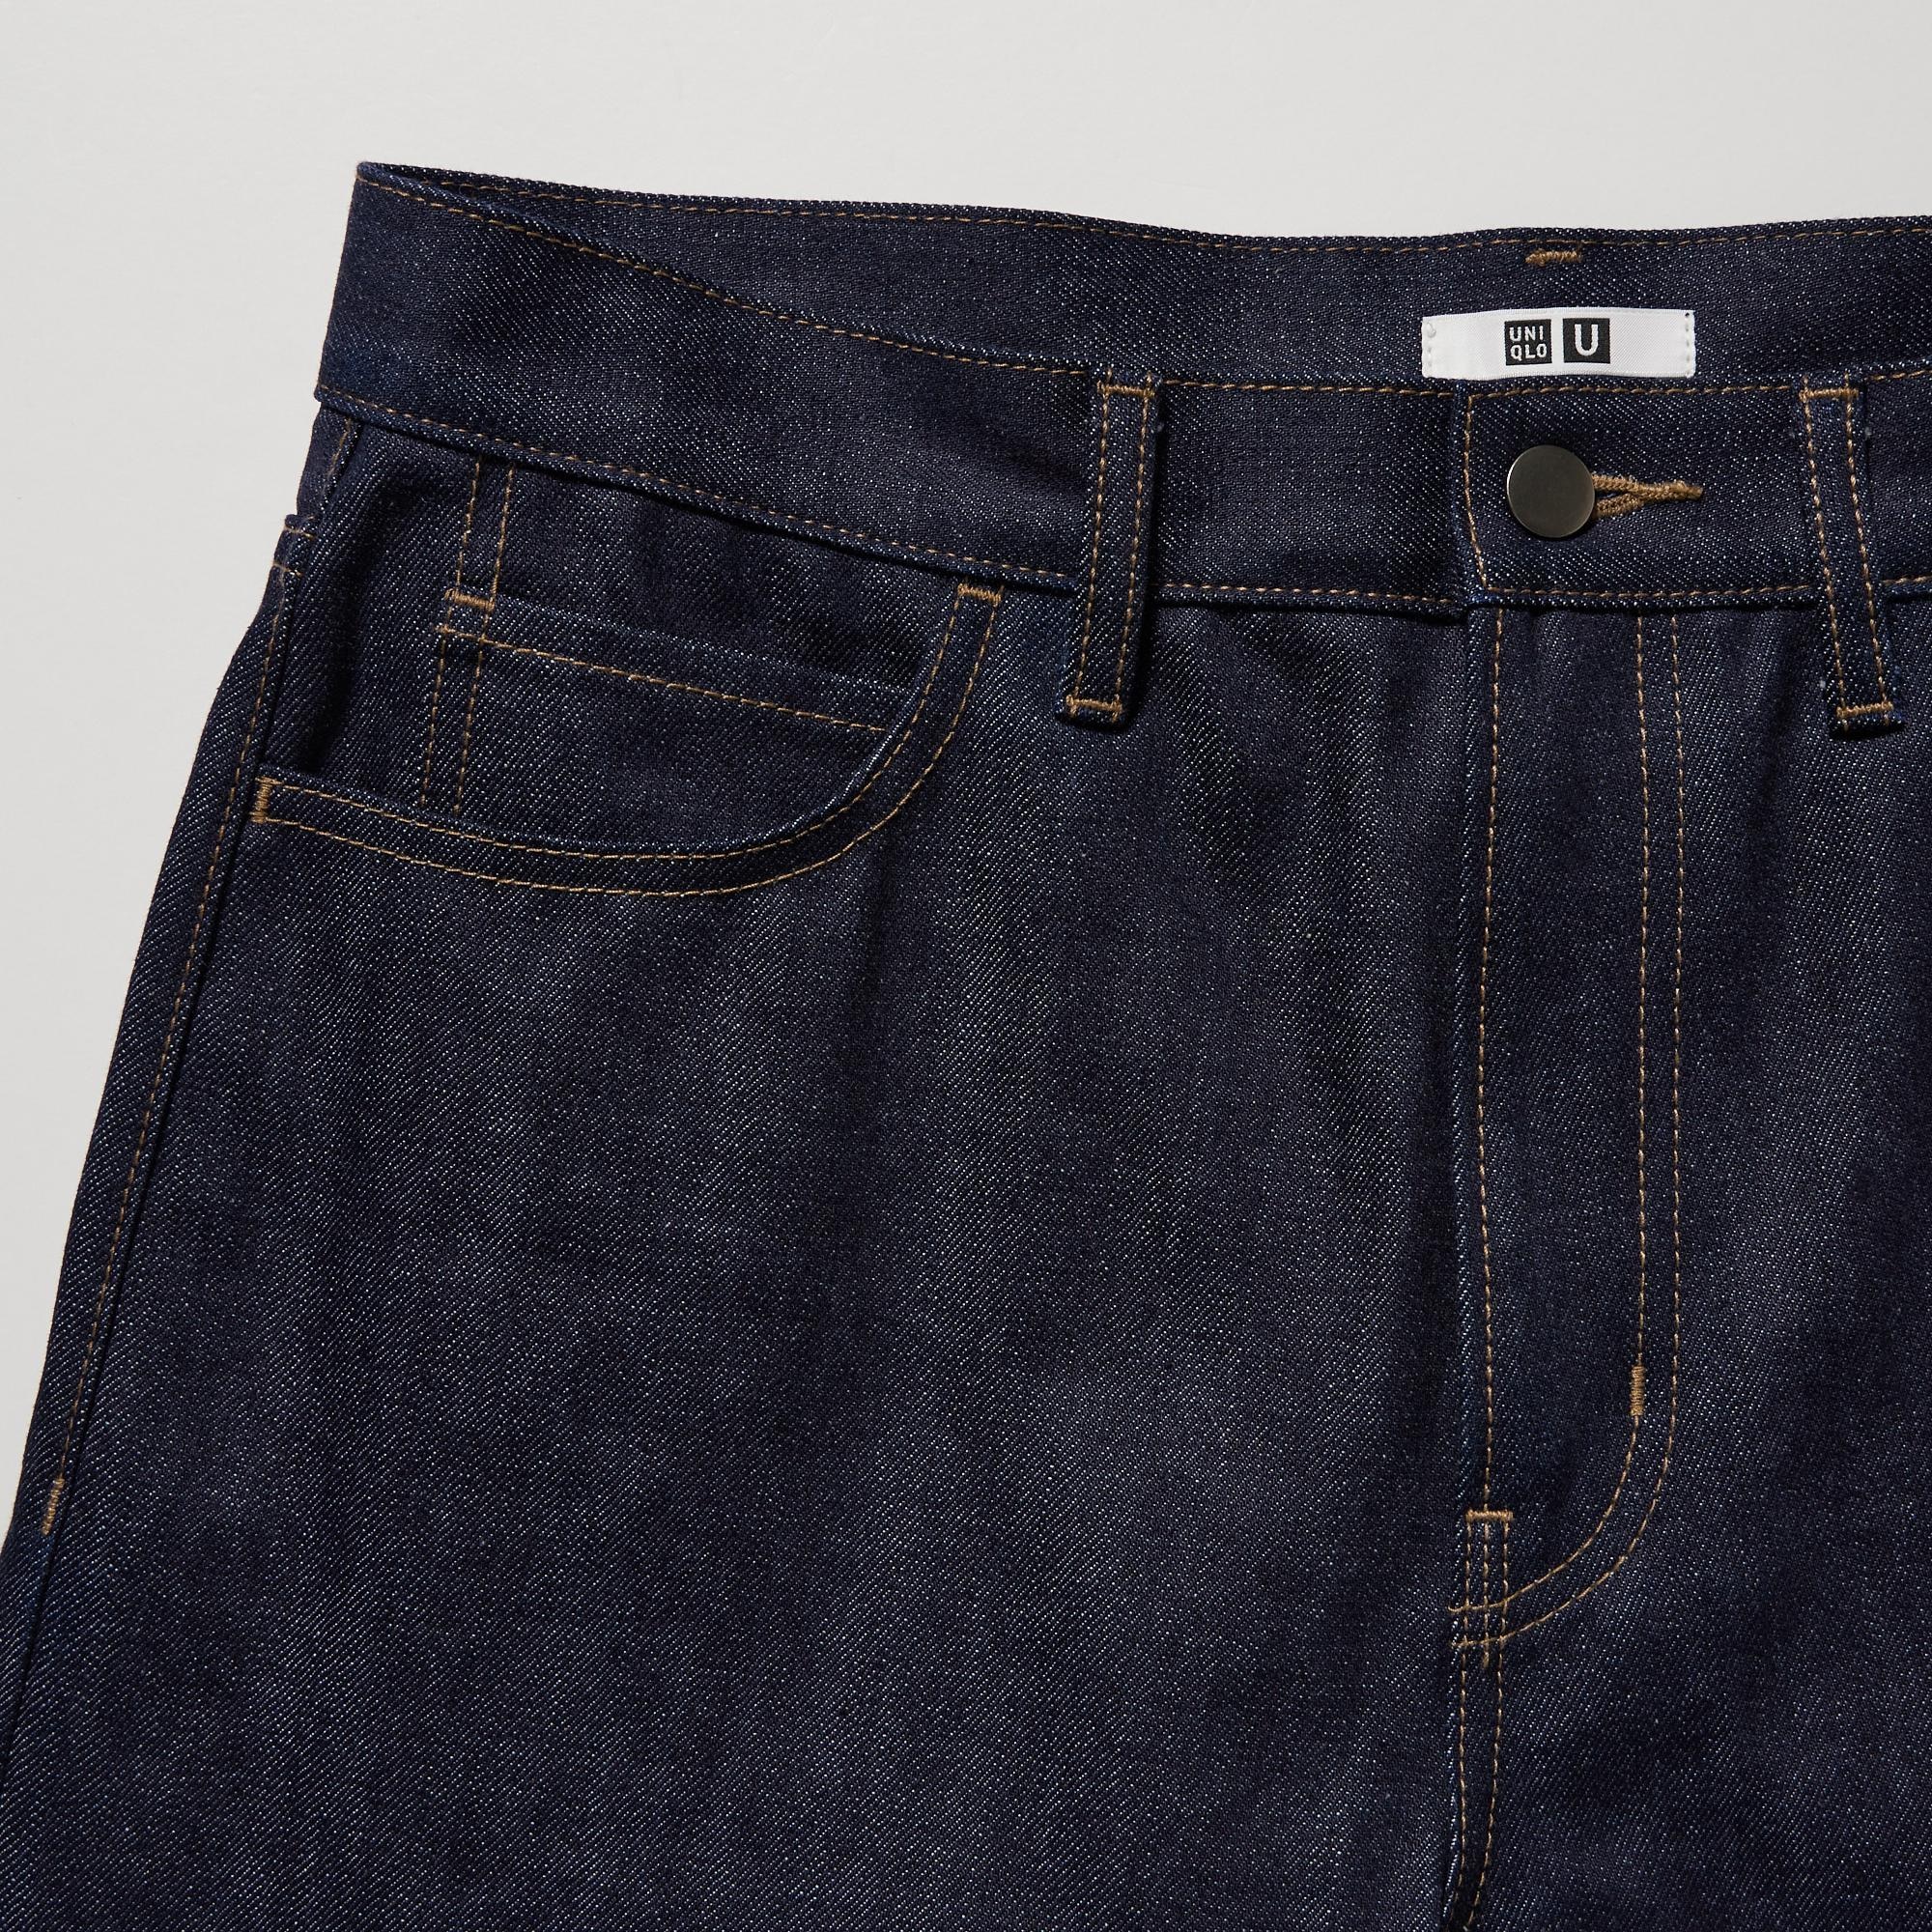 New Uniqlo U Mens Slim fit Regular Fit Jeans 36 X 32  eBay